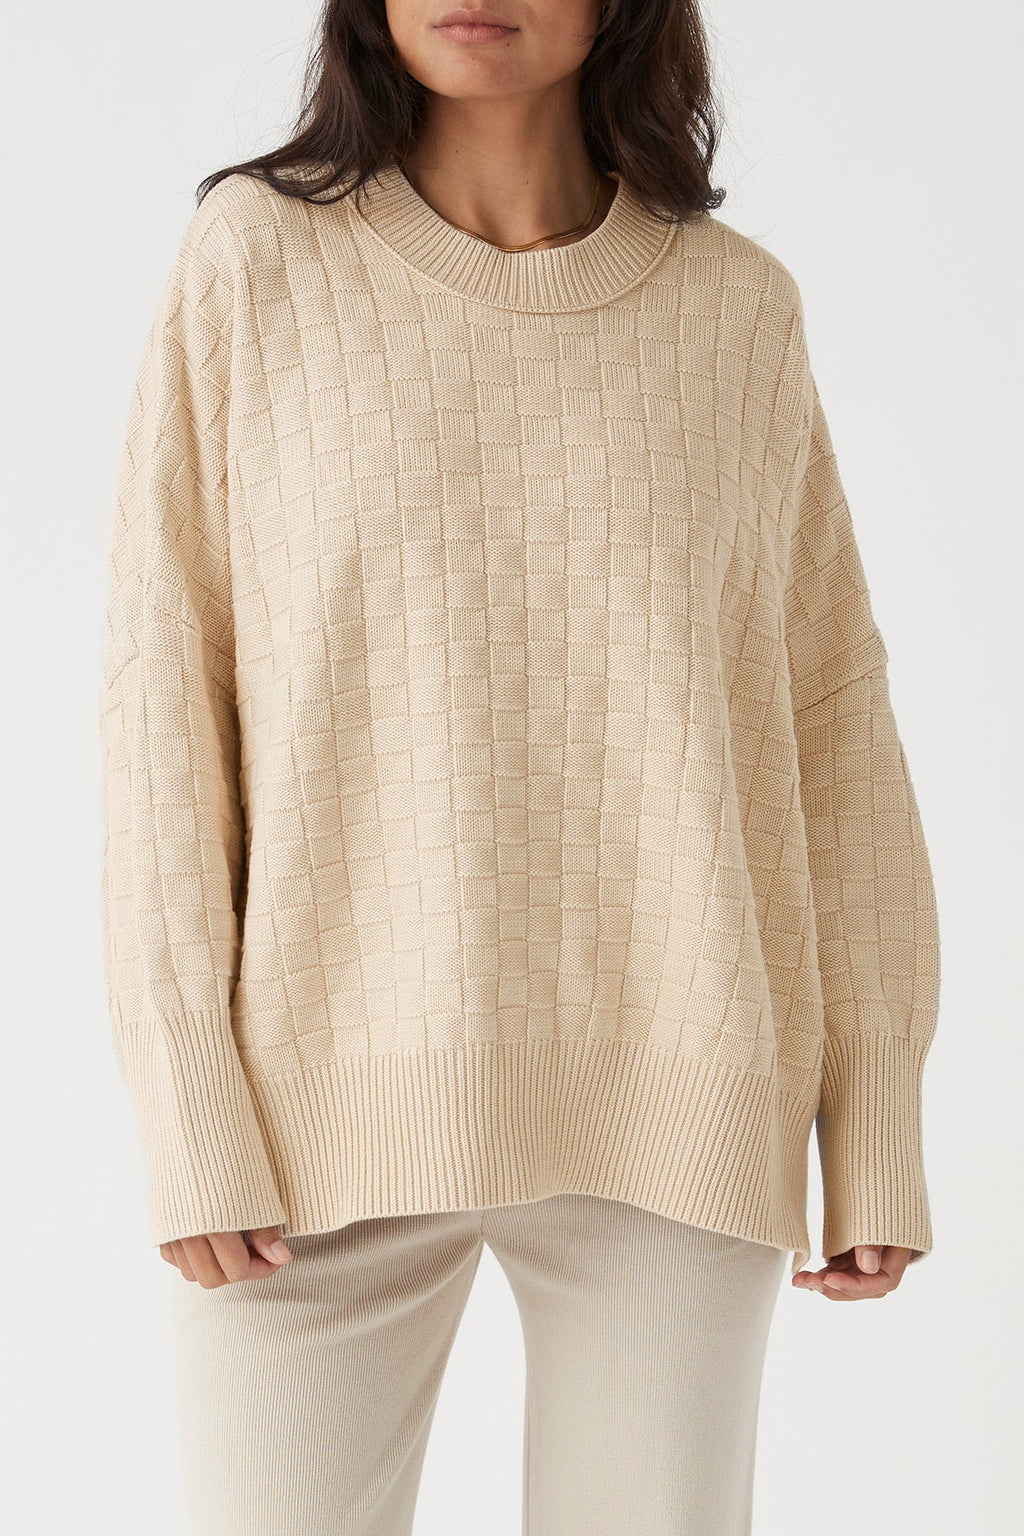 ARCAA  - Sierra Organic Knit Sweater - Oat